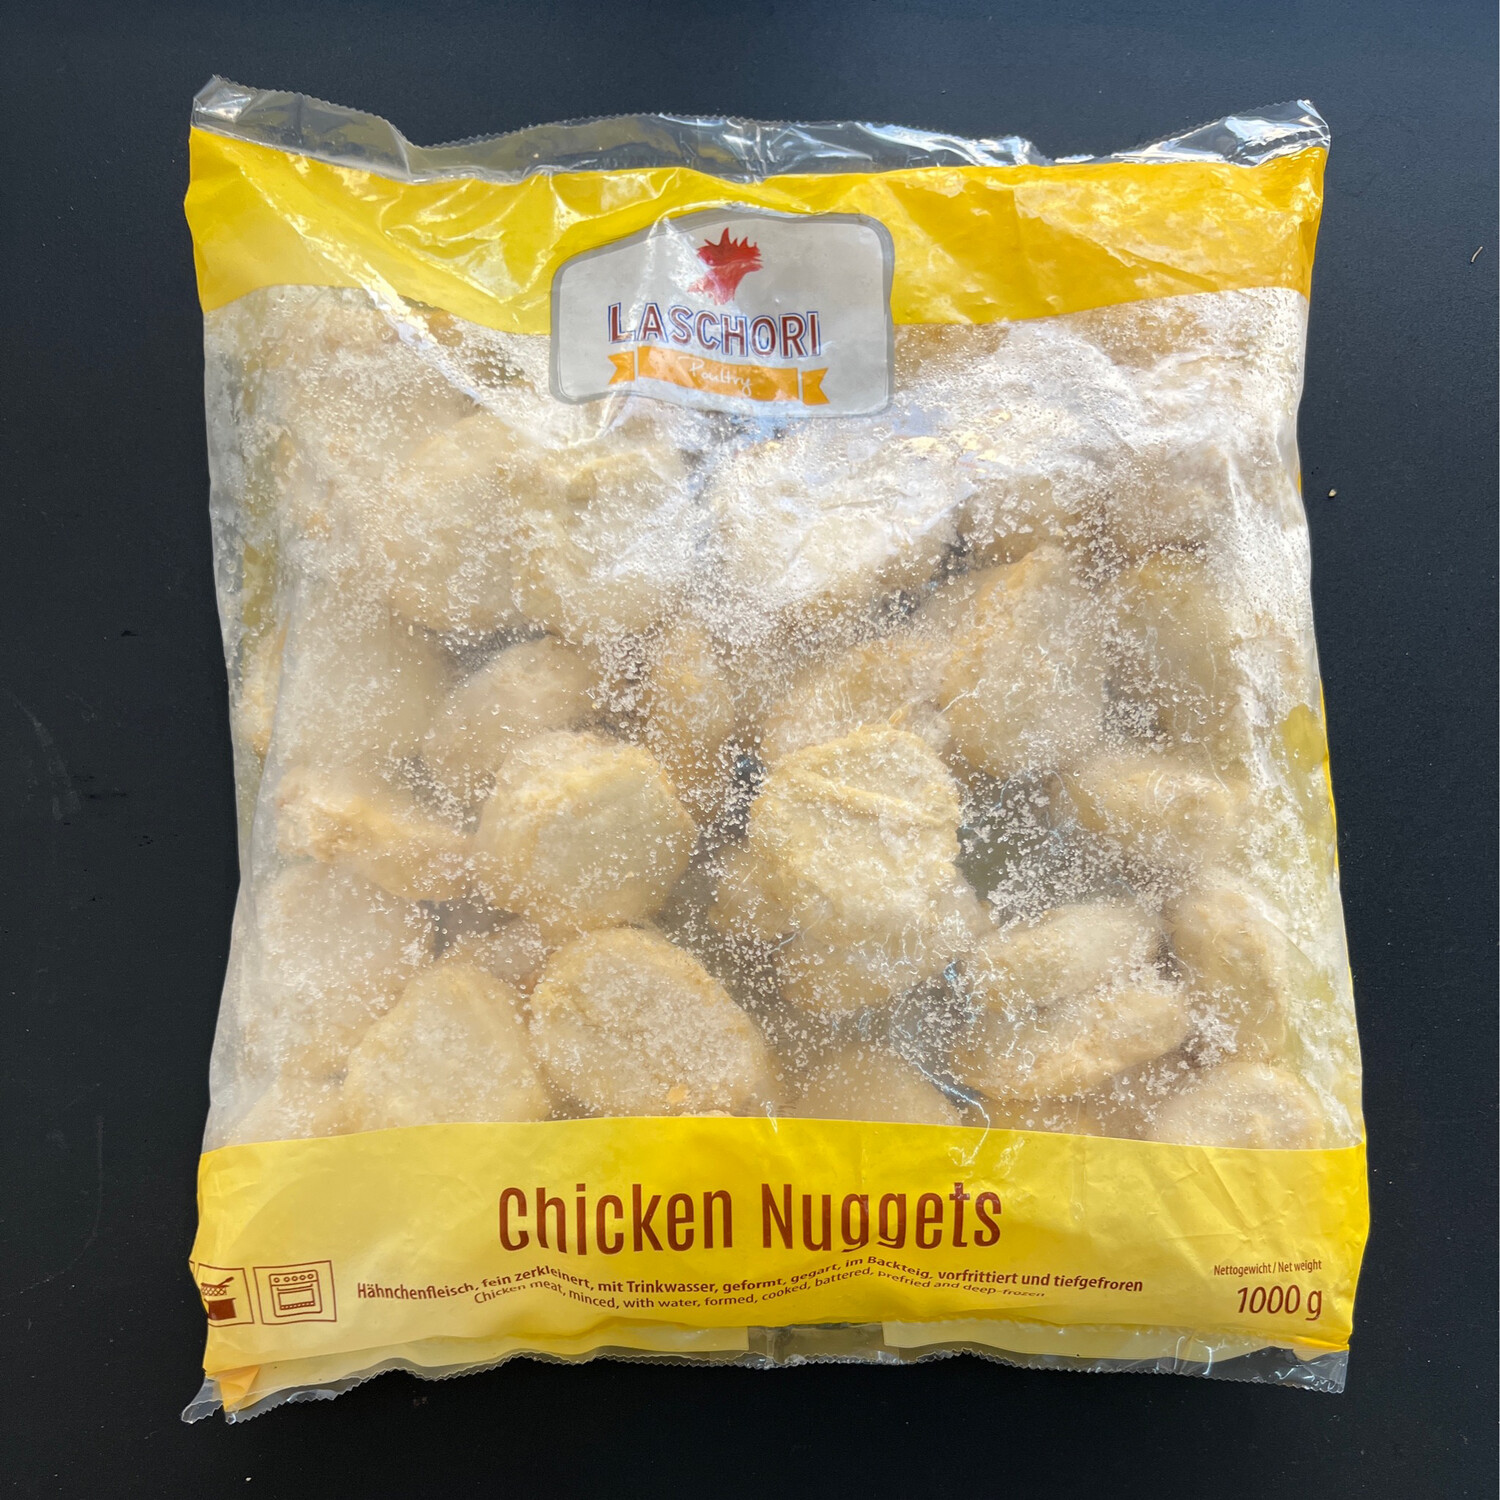 Laschori Chicken Nuggets